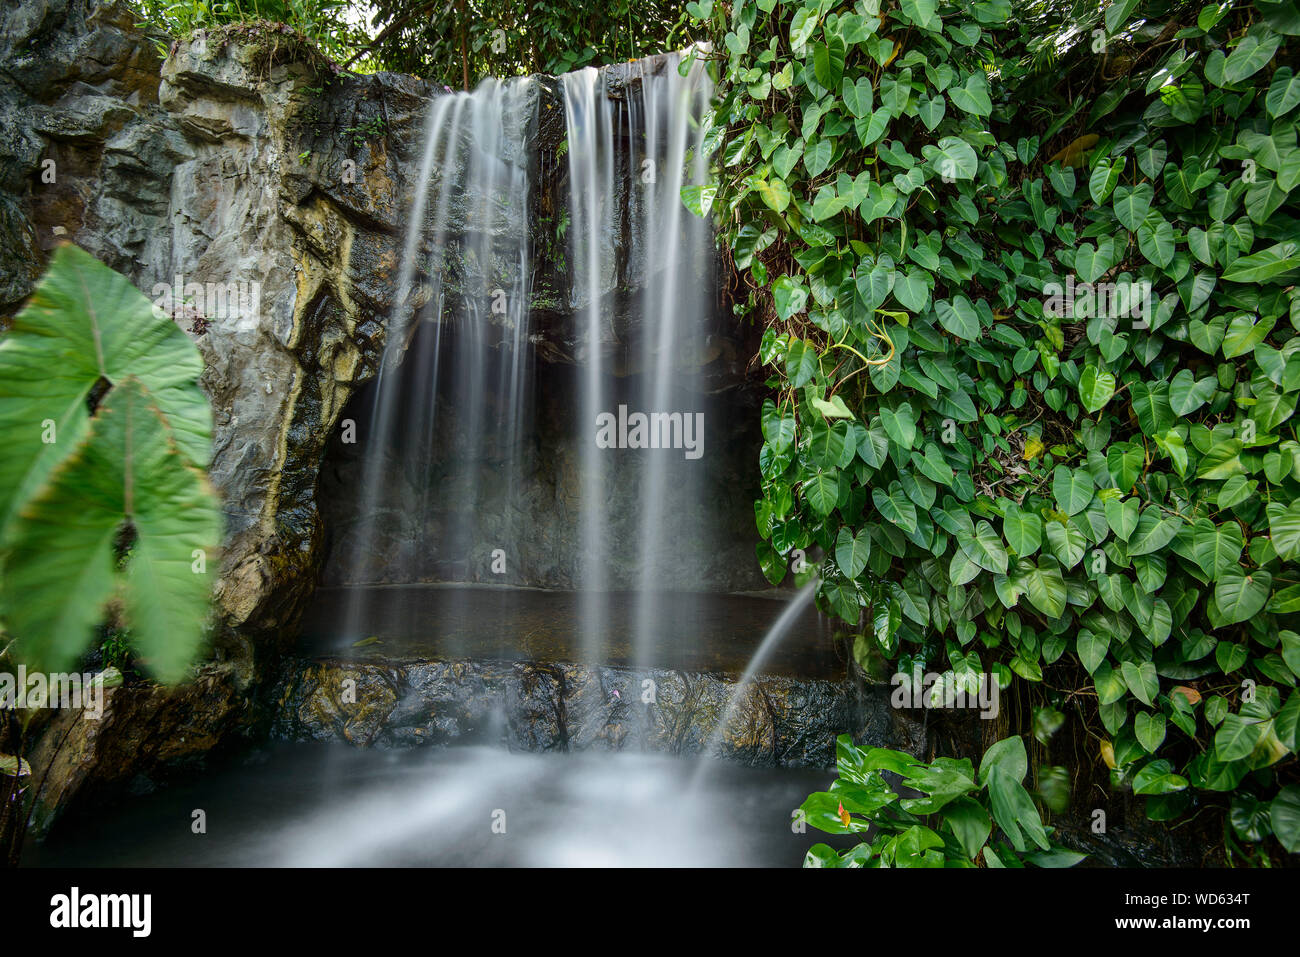 Scenic View Of Waterfall At Singapore Botanic Gardens Stock Photo